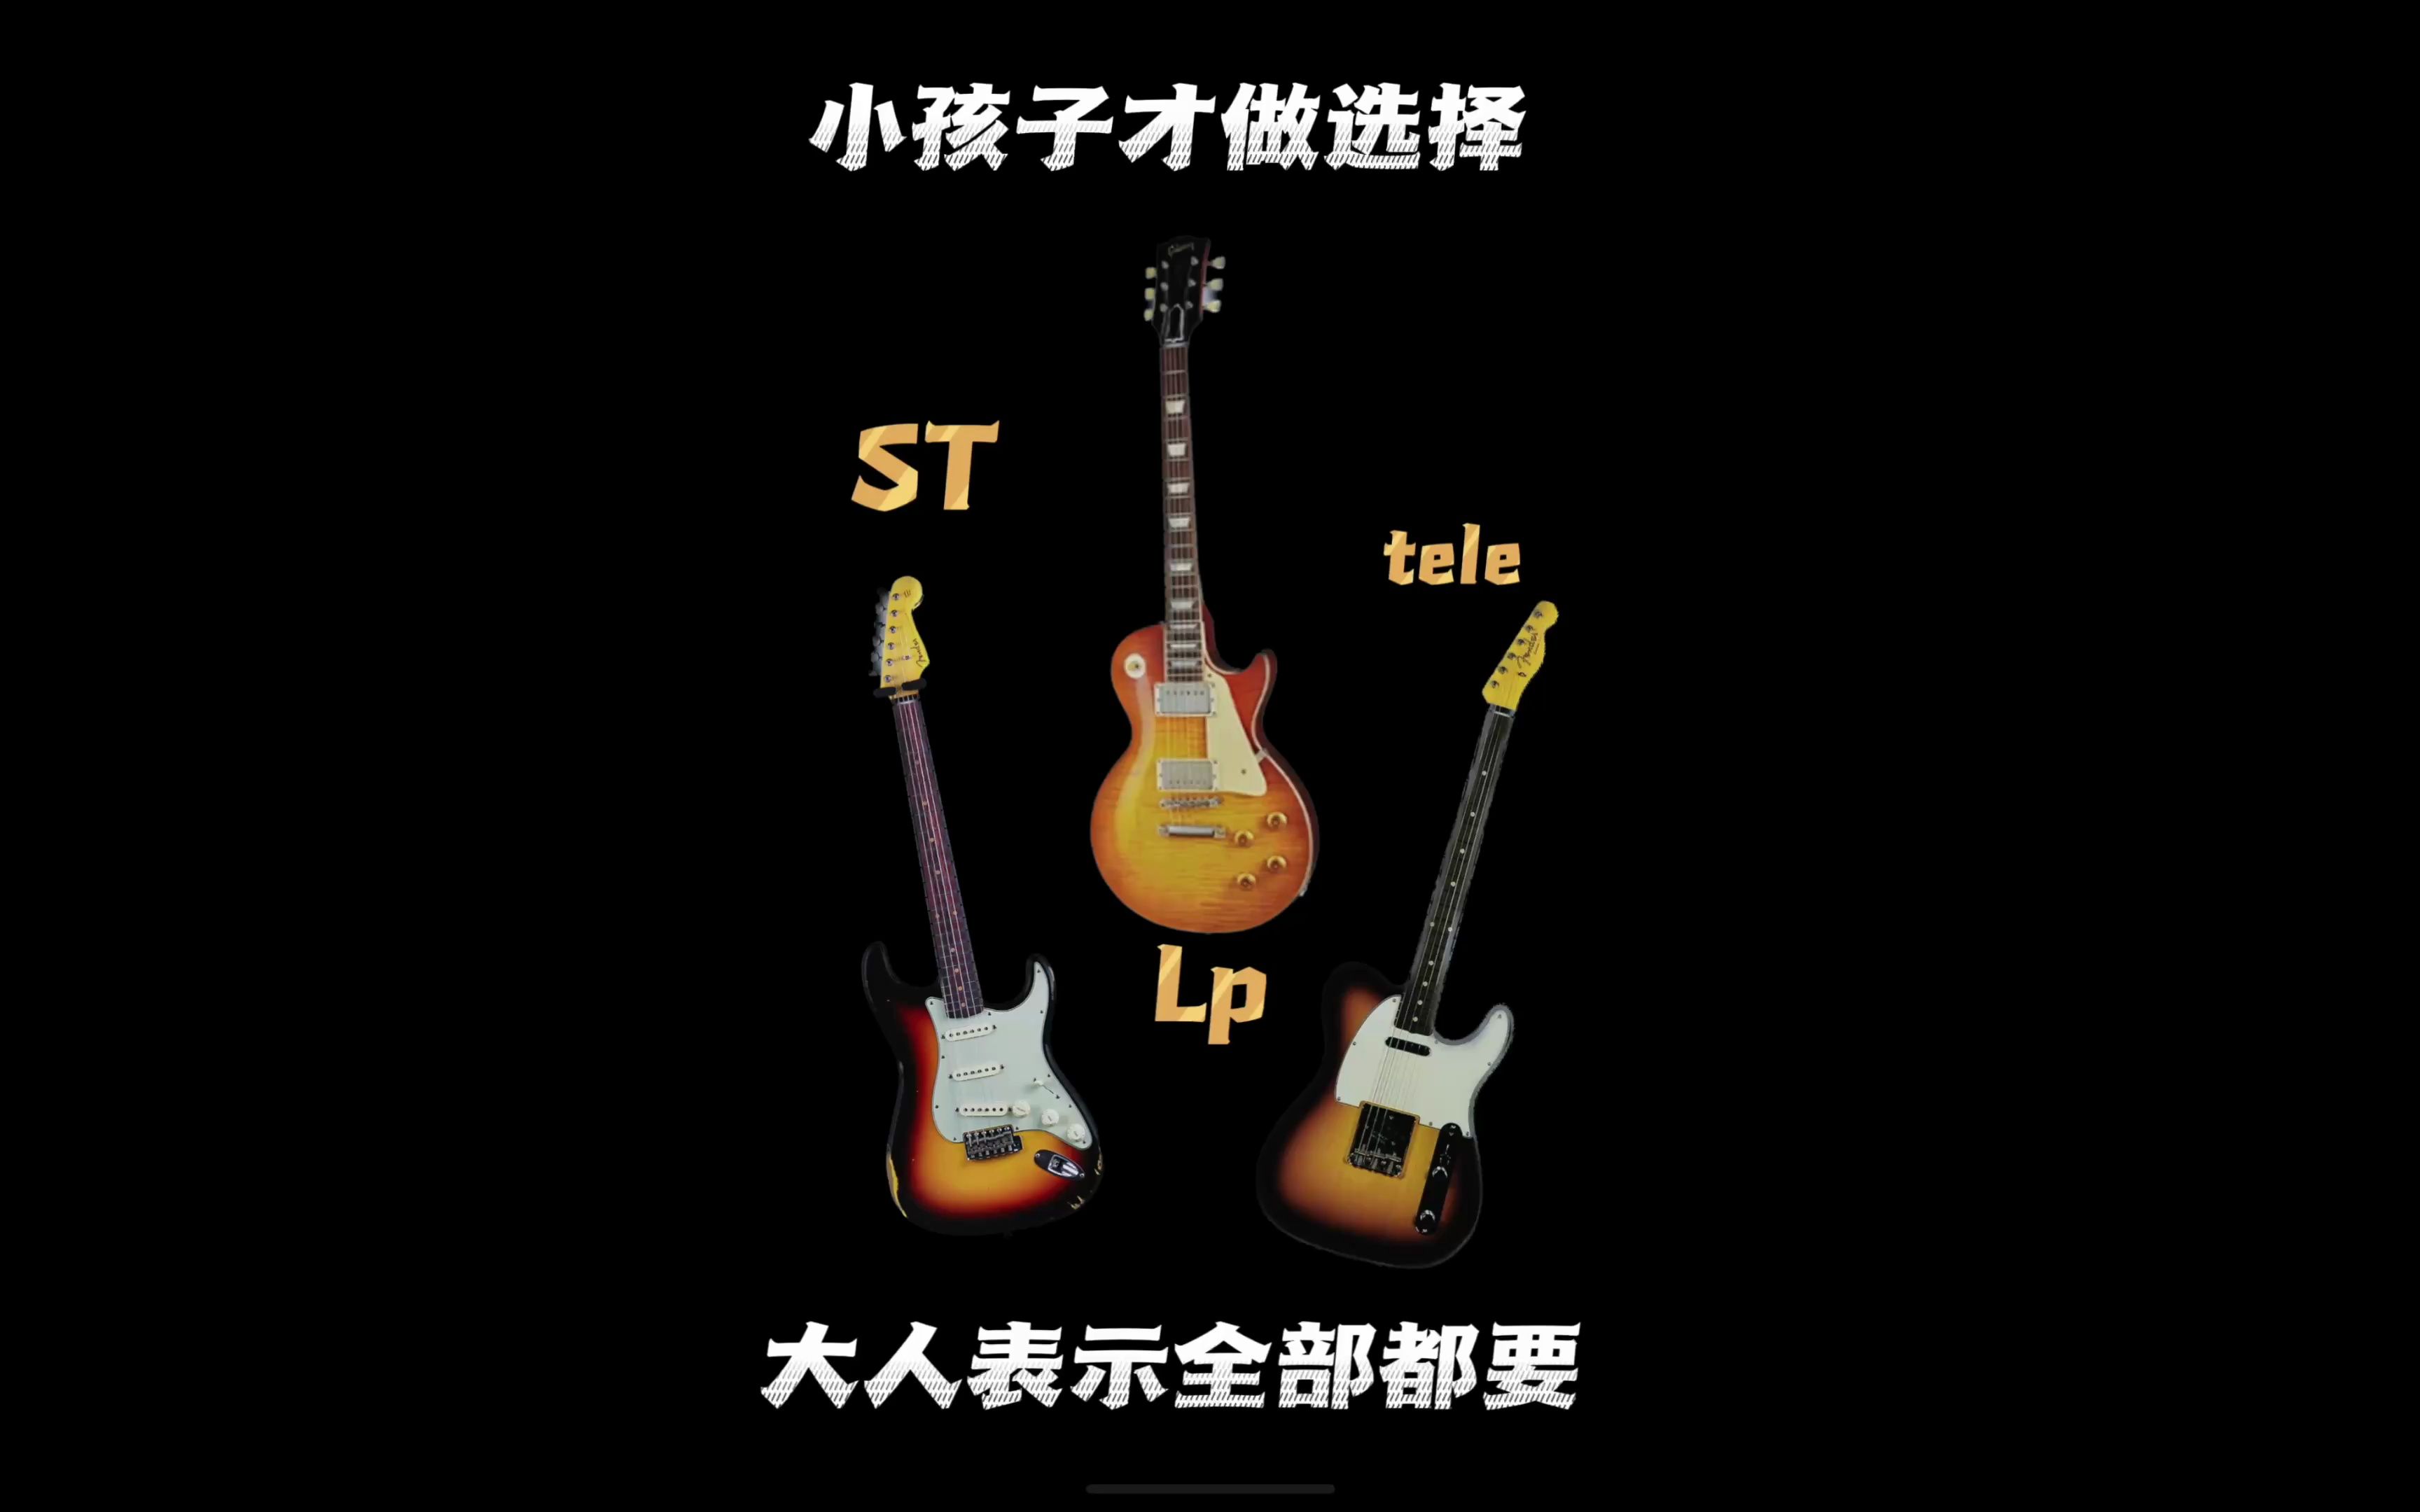 ST LP TELE 三个形状电吉他漂亮的外观下音色有何区别 野生菌研究所